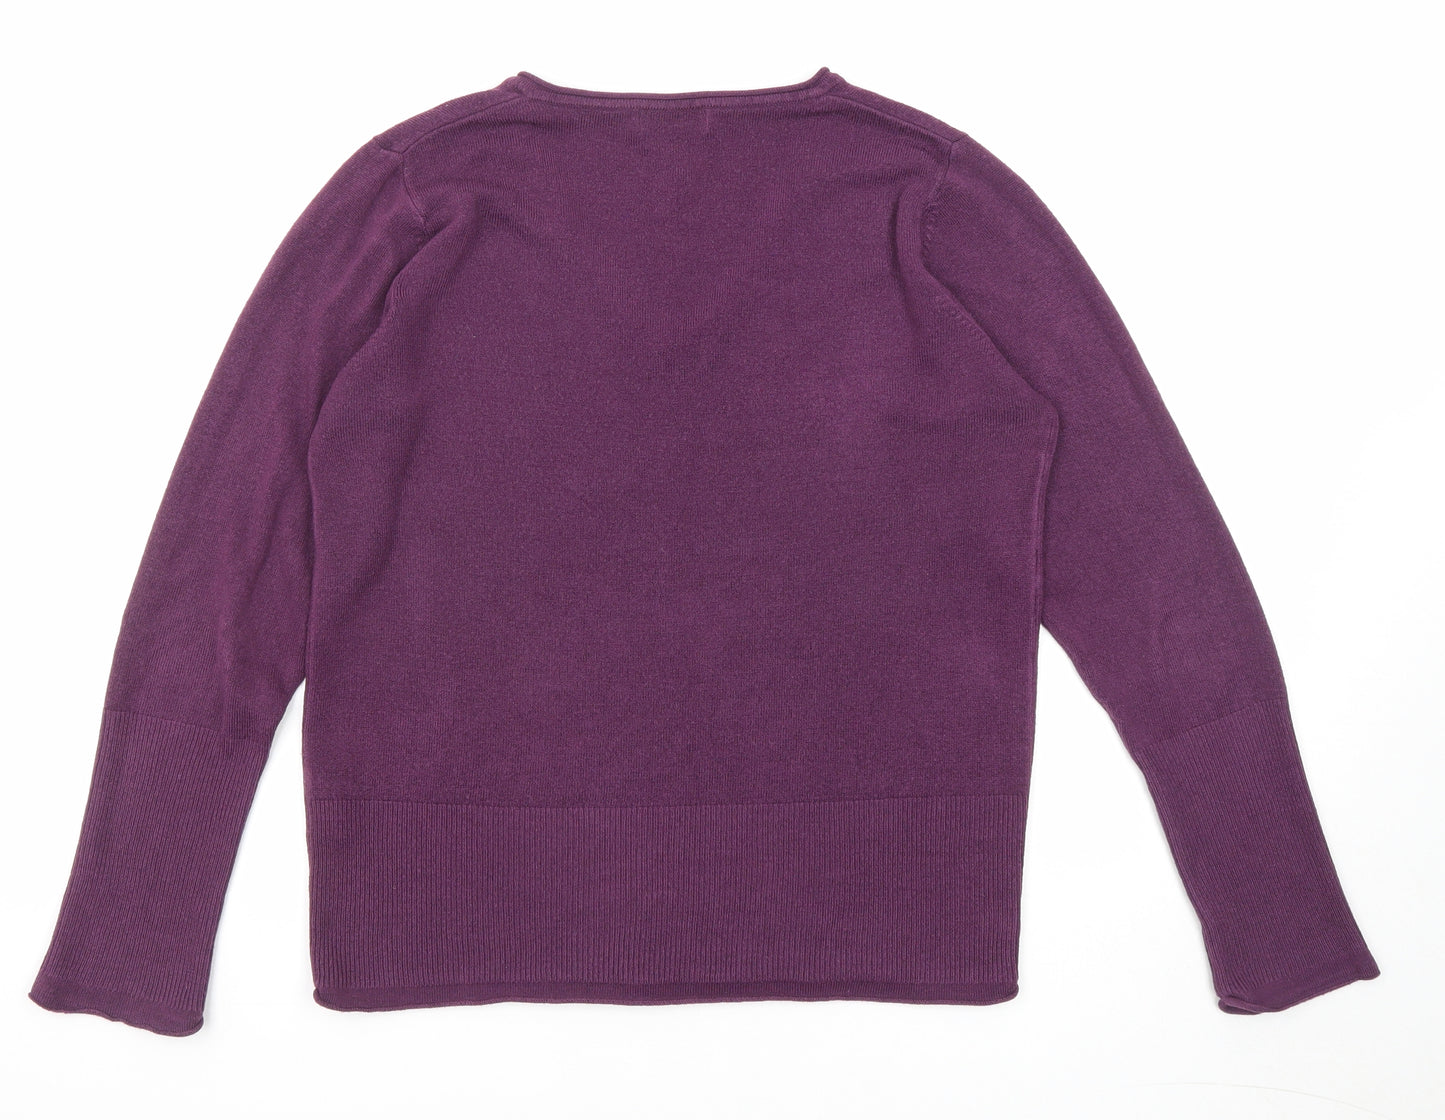 Per Una Womens Purple V-Neck Acrylic Pullover Jumper Size 14